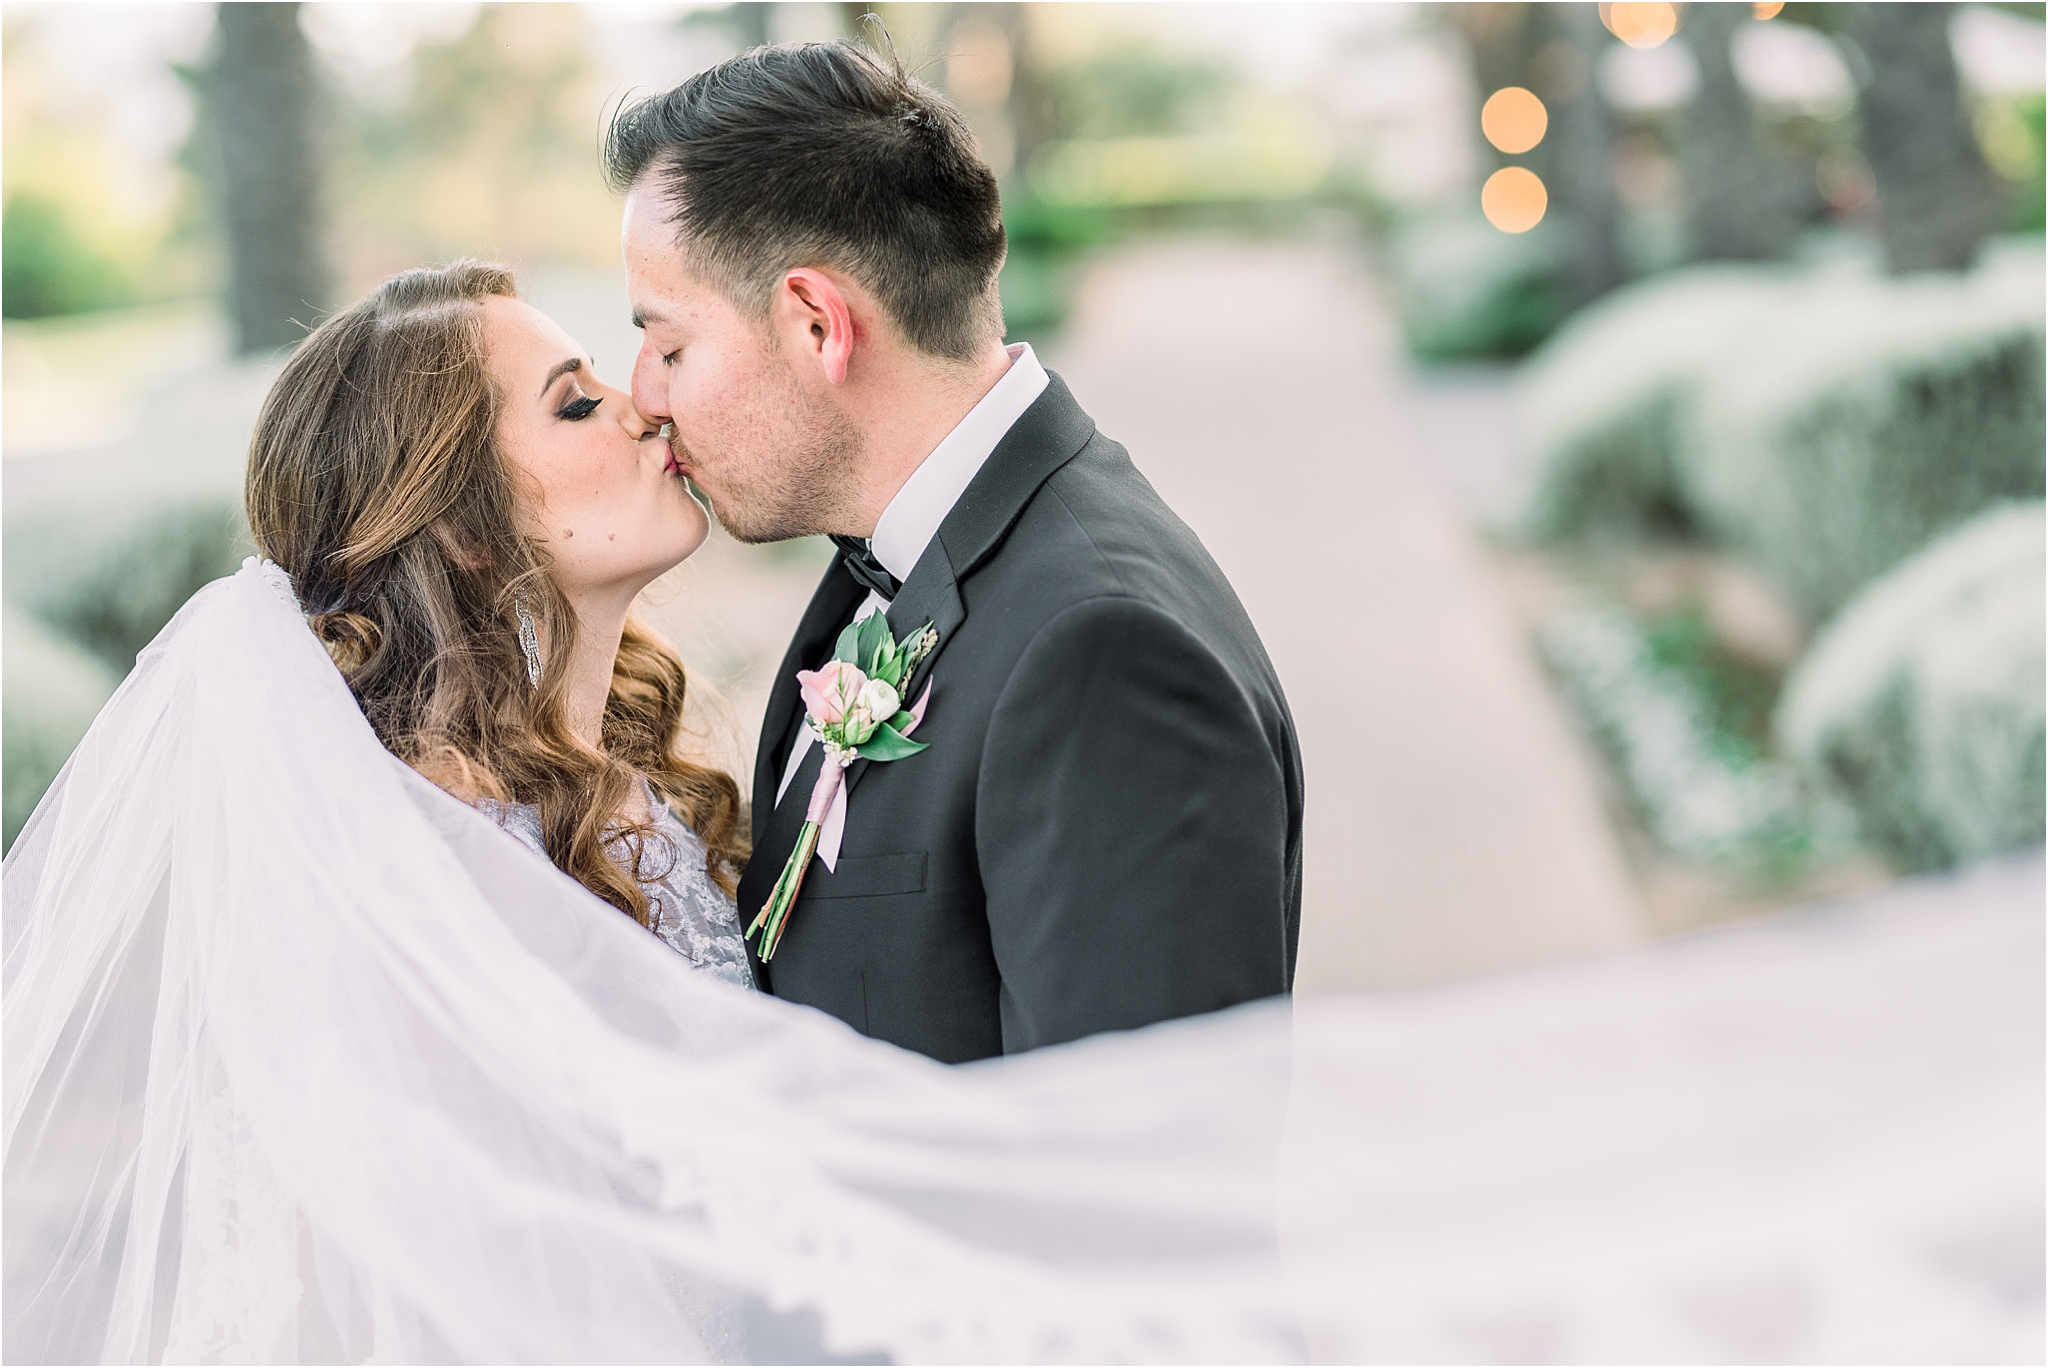 Omni Wedding Photographer | Tucson AZ | Ligia and Arturo bride & groom photos | Tucson Wedding Photographer | West End Photography